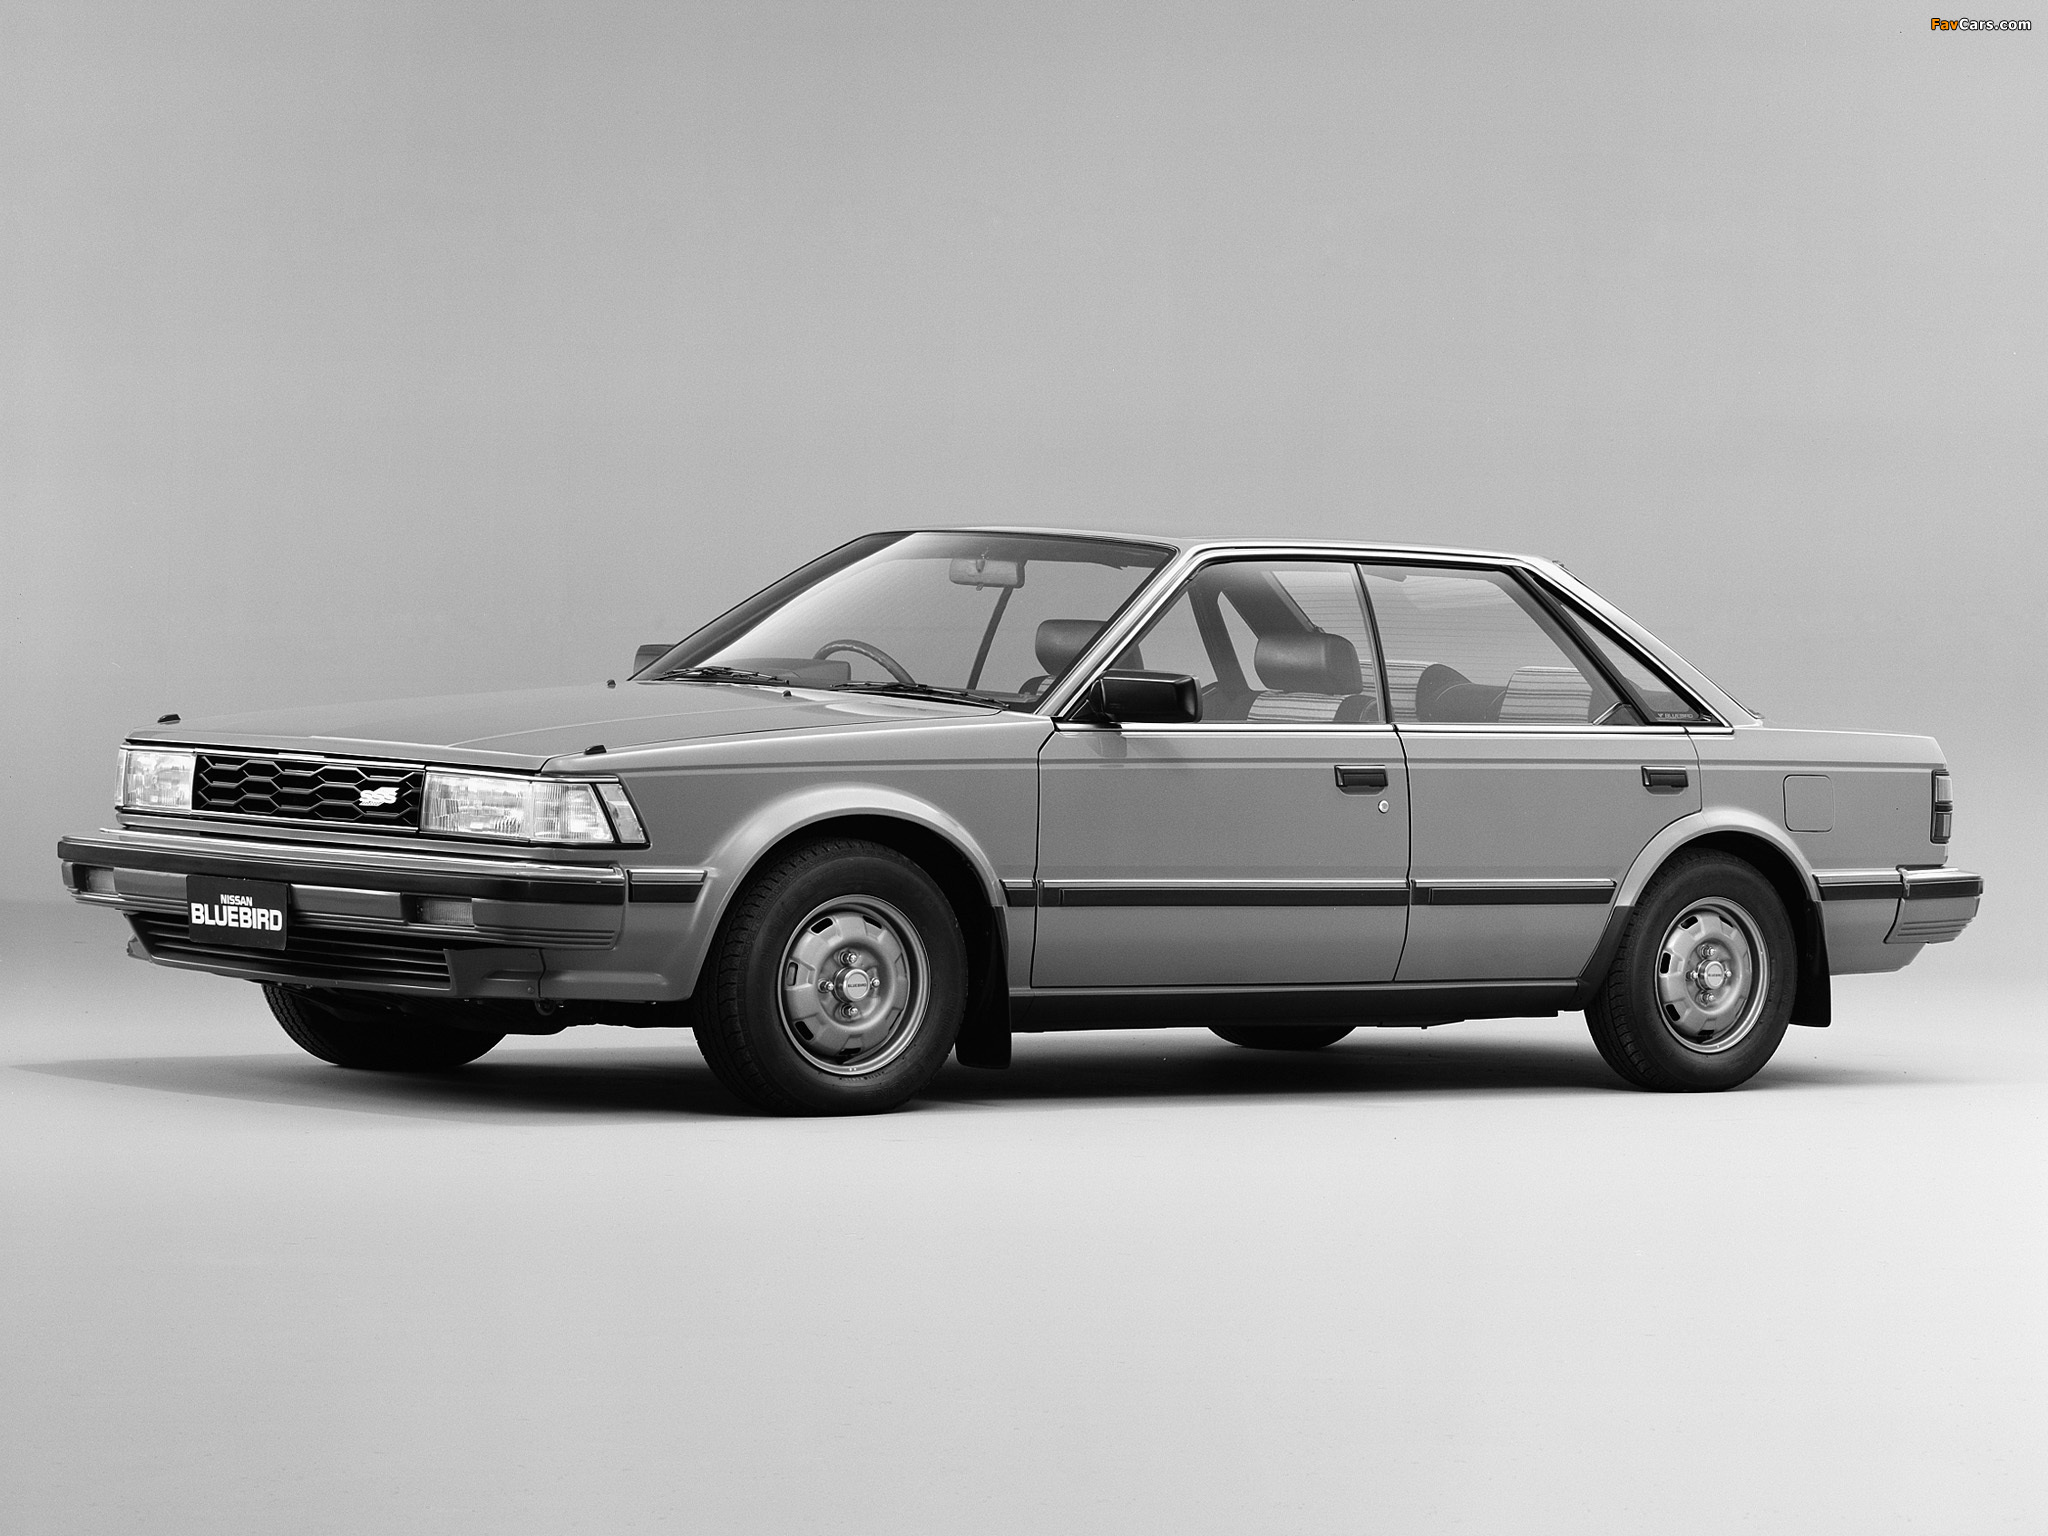 1983 Nissan Bluebird SSS